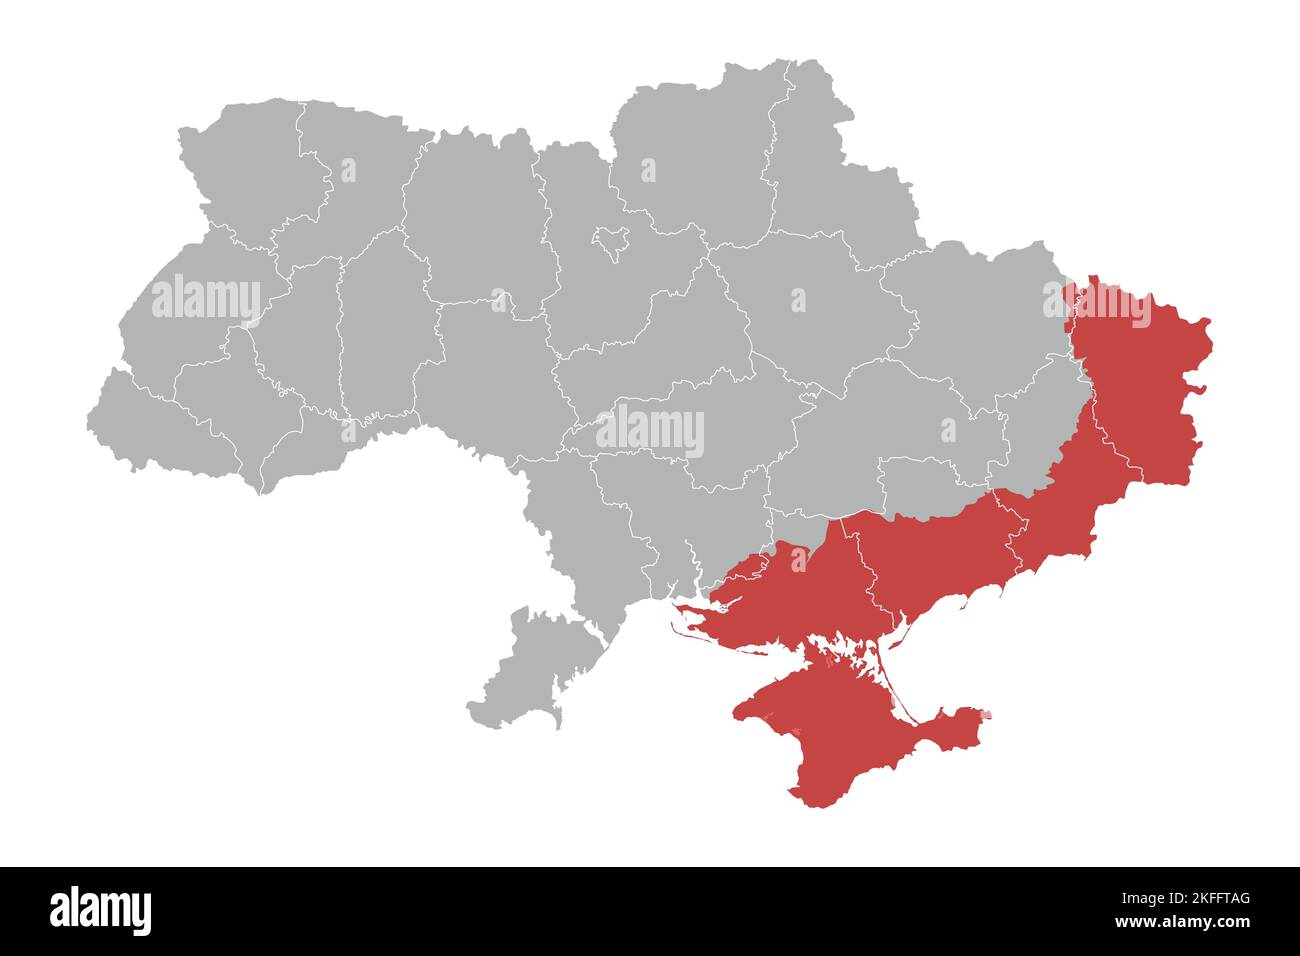 Mappa politica dell'Ucraina con i confini delle regioni Illustrazione Vettoriale